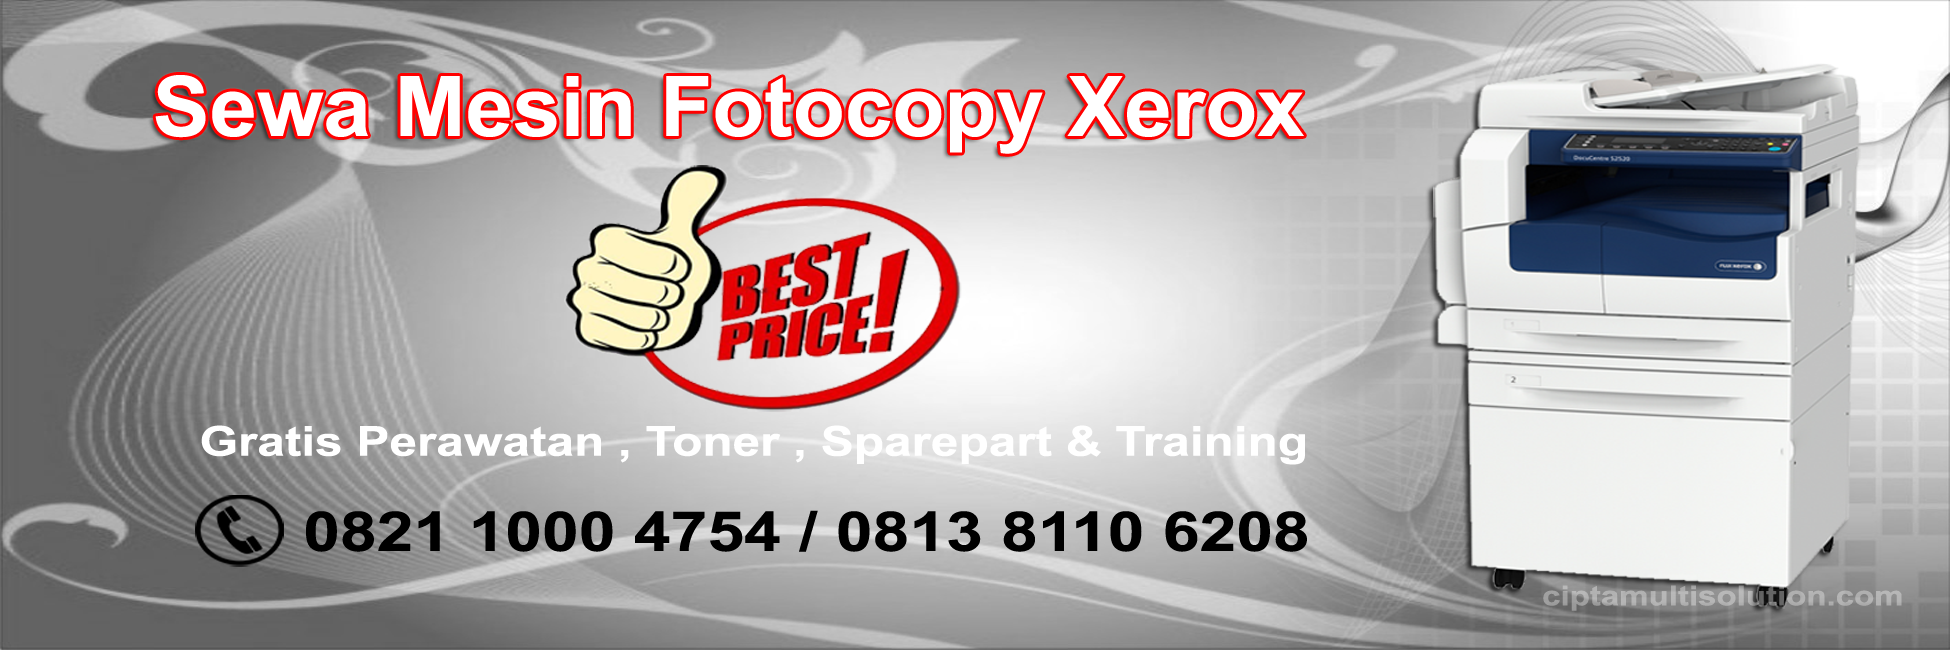 sewa-mesin-fotocopy-xerox-info